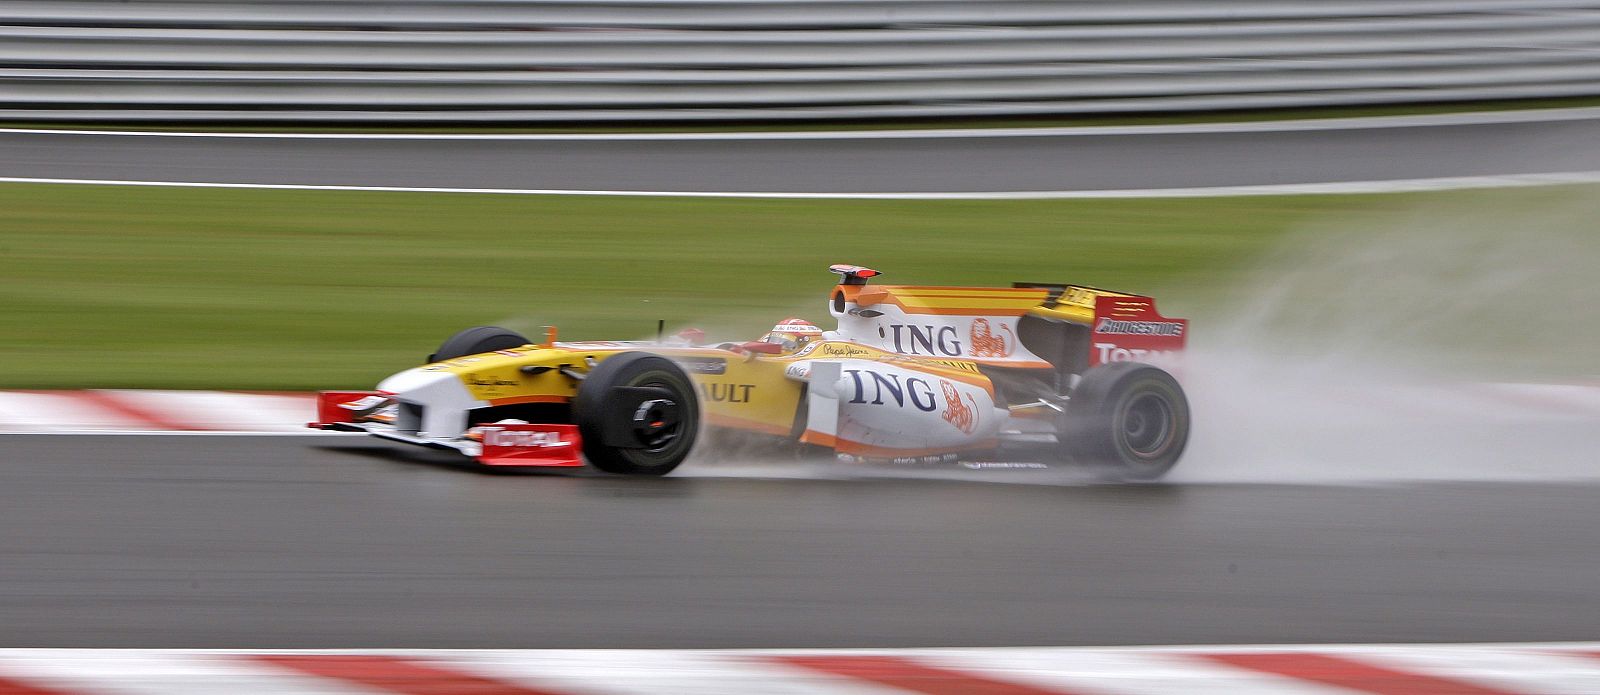 El piloto español de Fórmula Uno, Fernando Alonso, de Renault, durante los entrenamientos del Gran Premio de Bélgica, en el circuito de Spa-Francorchamps.